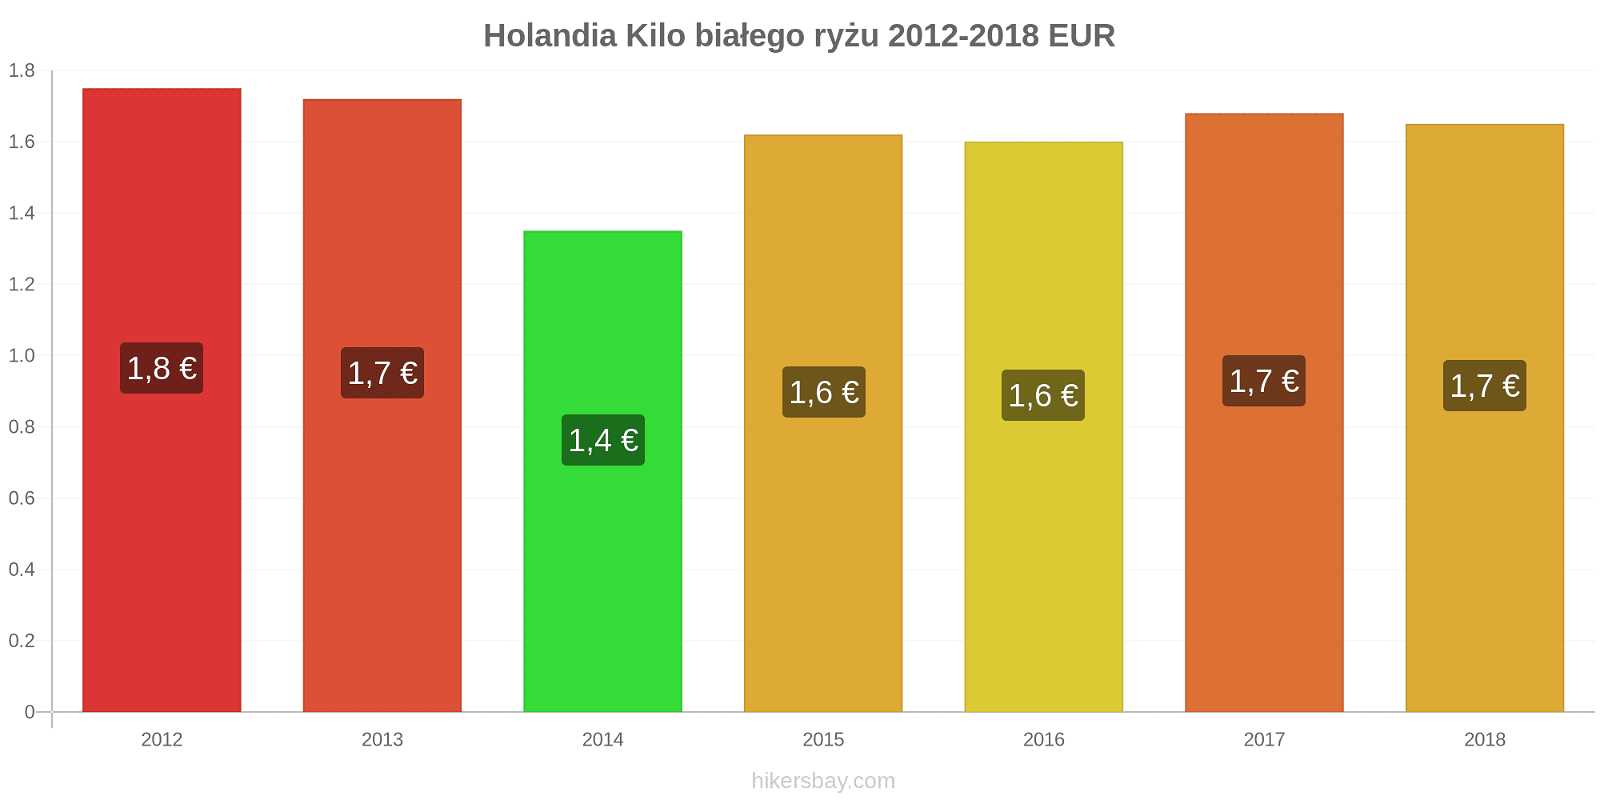 Holandia zmiany cen Kilo białego ryżu hikersbay.com